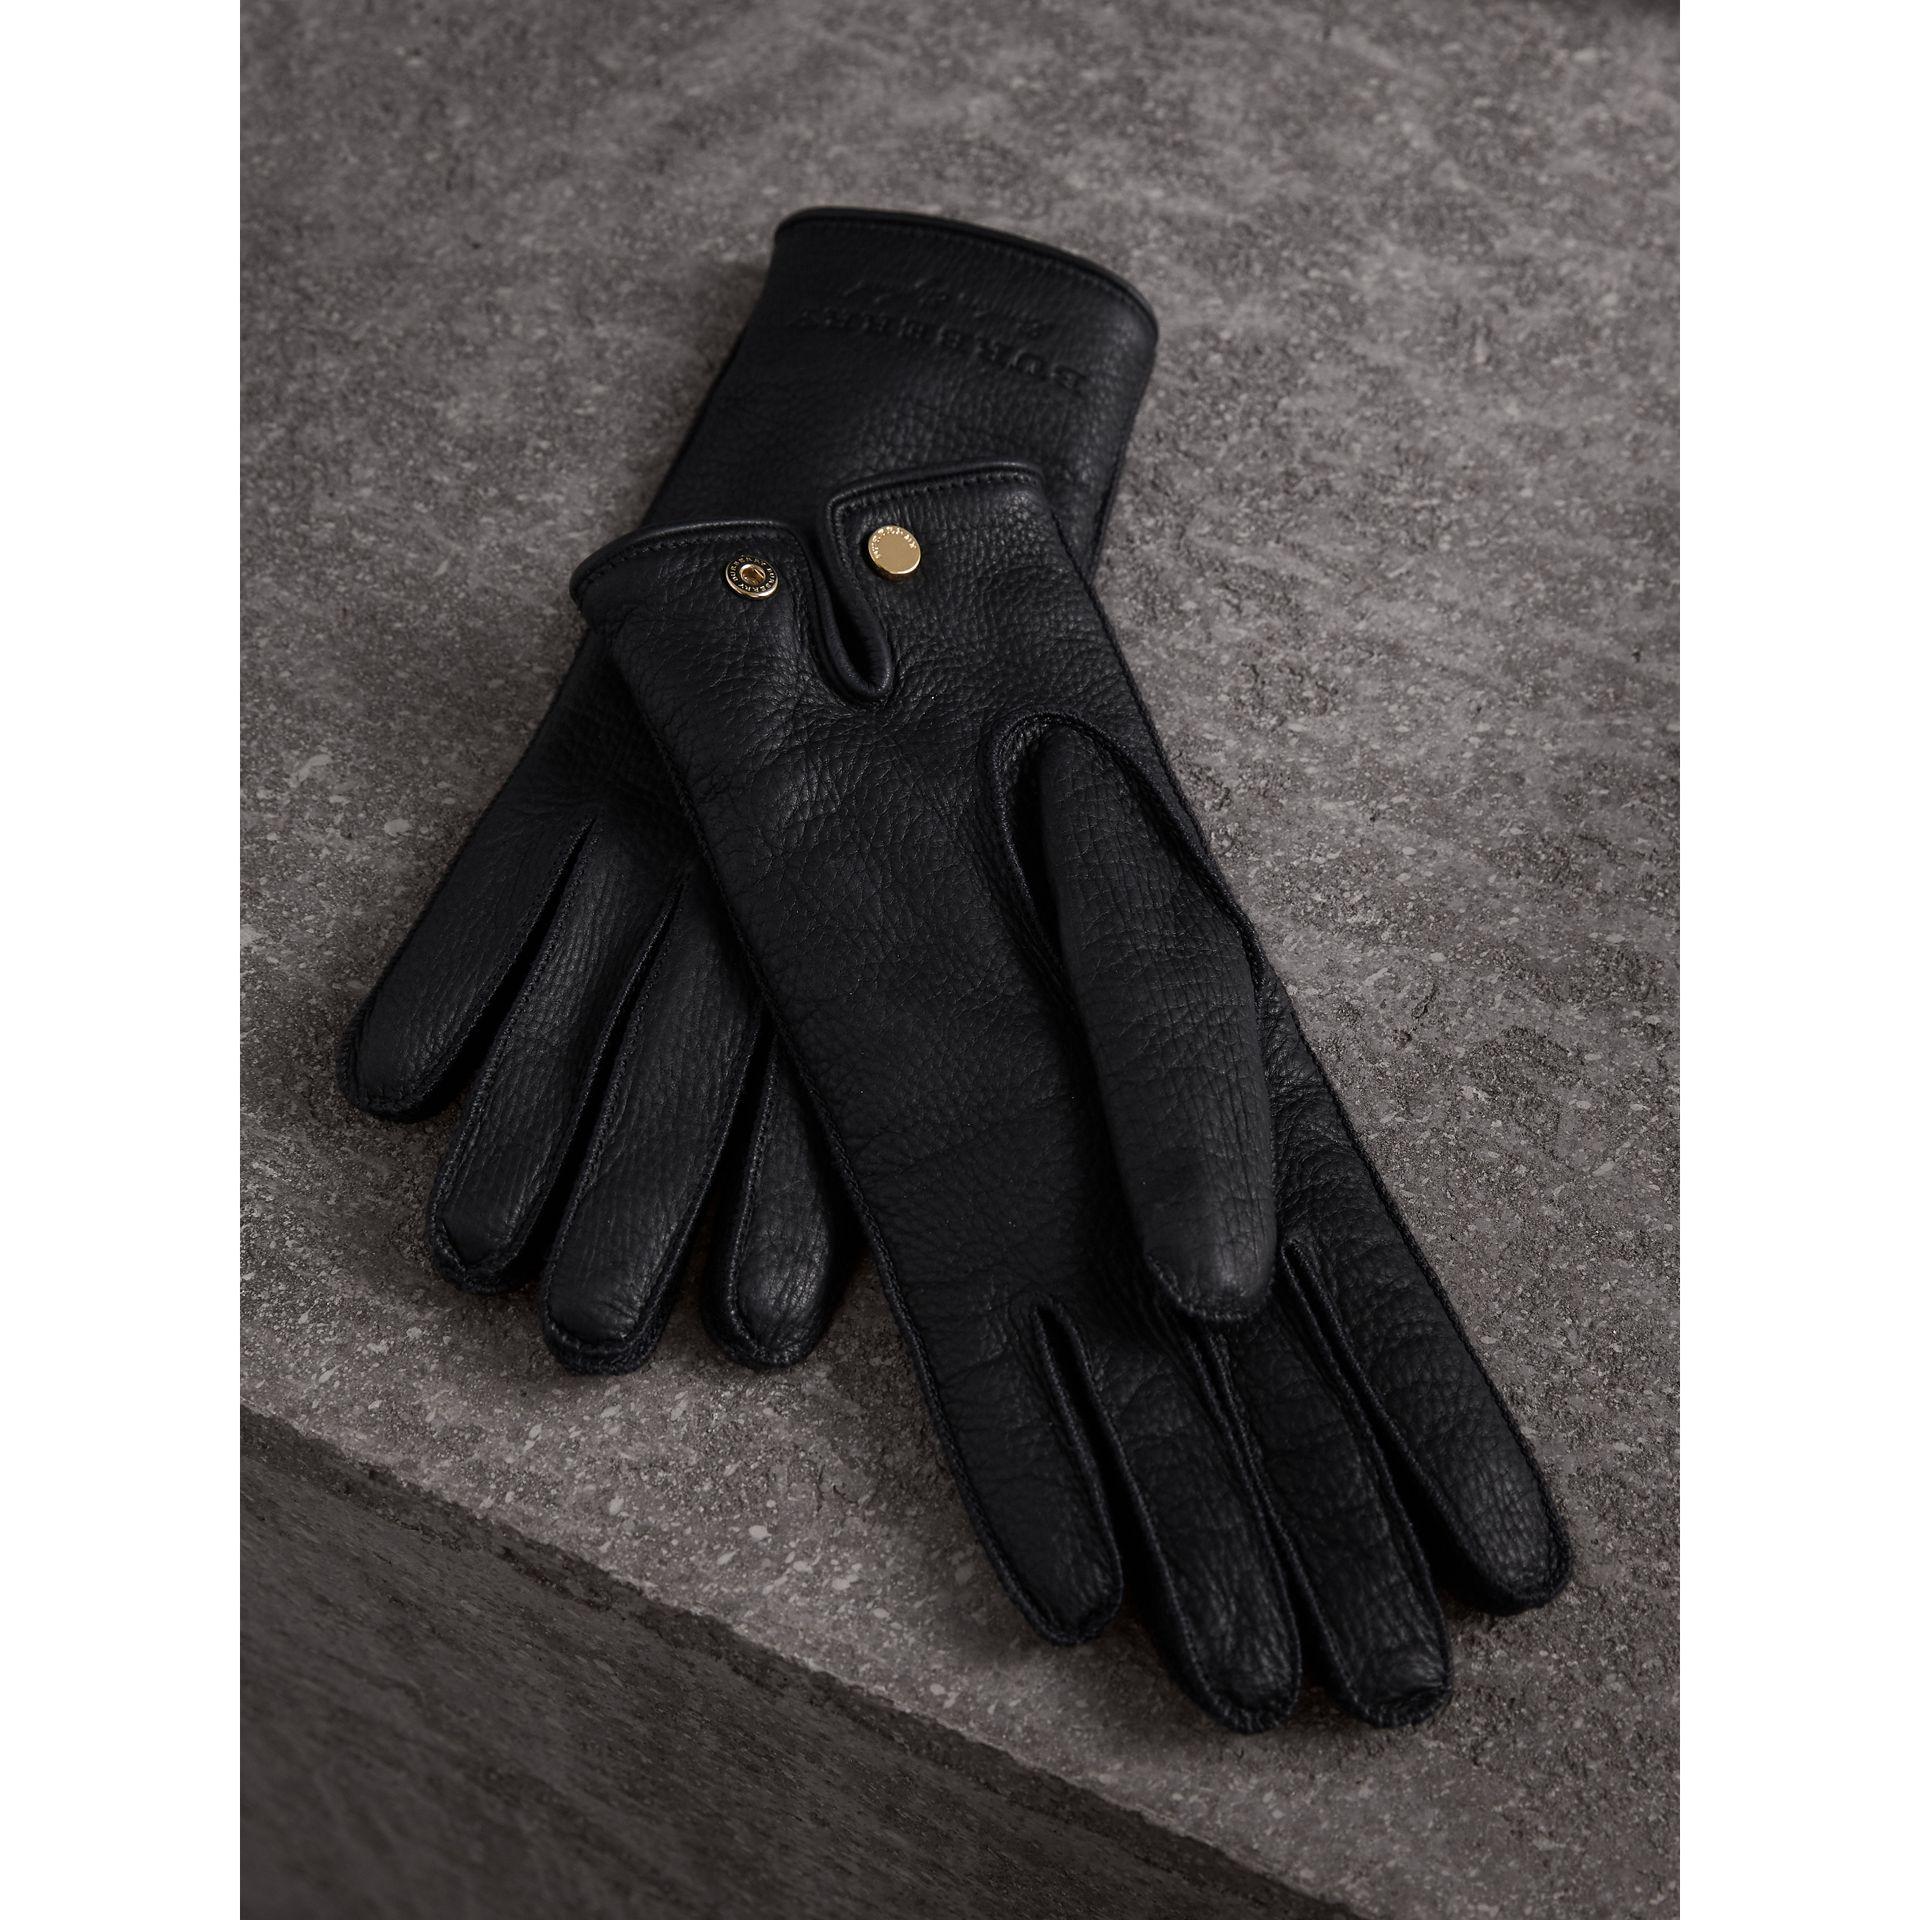 burberry deerskin gloves